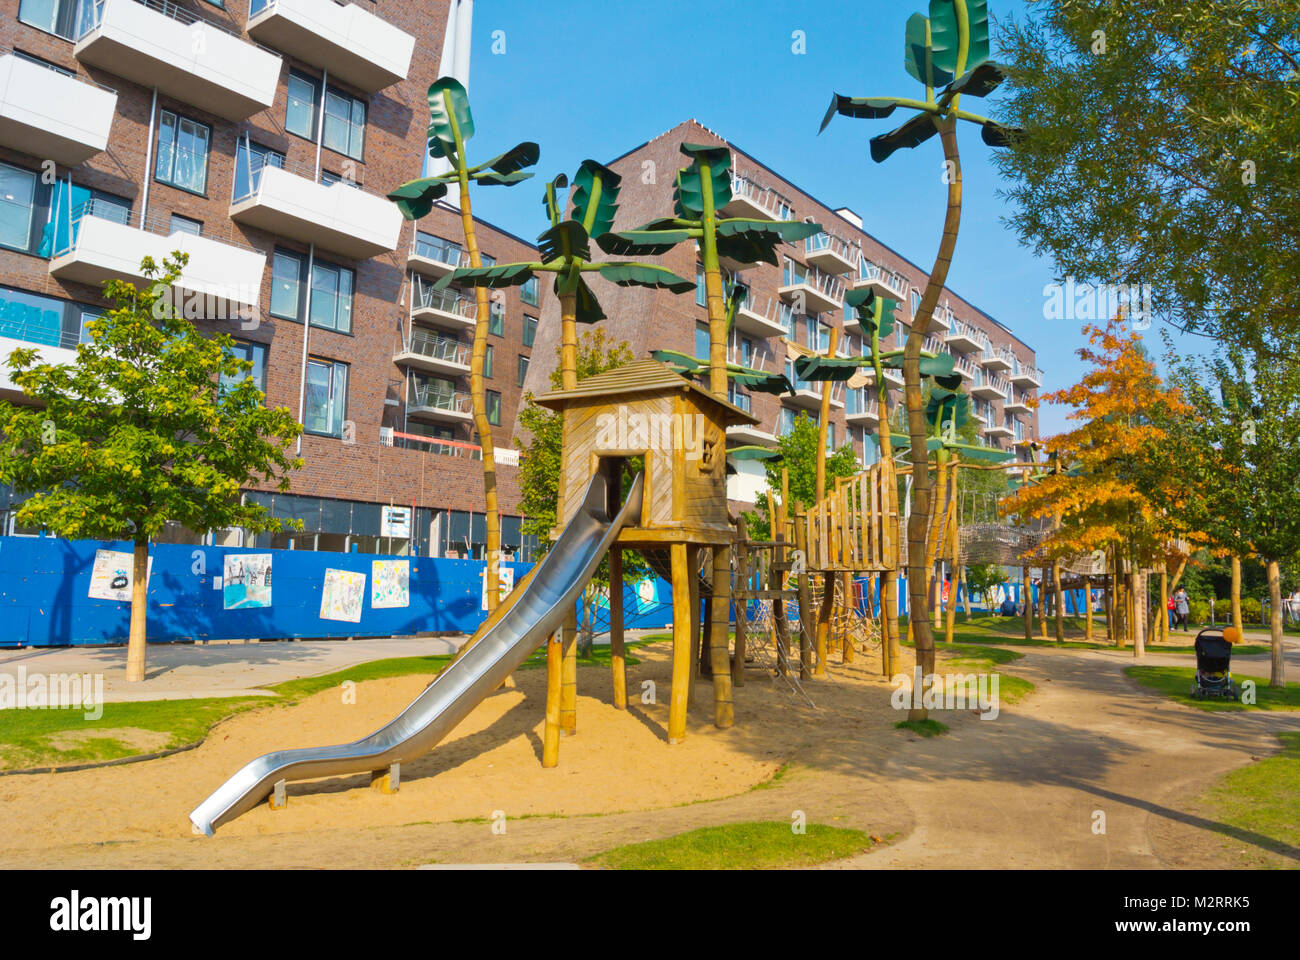 Aire de jeux pour enfants, Grasbrookpark, HafenCity, Hambourg, Allemagne Banque D'Images